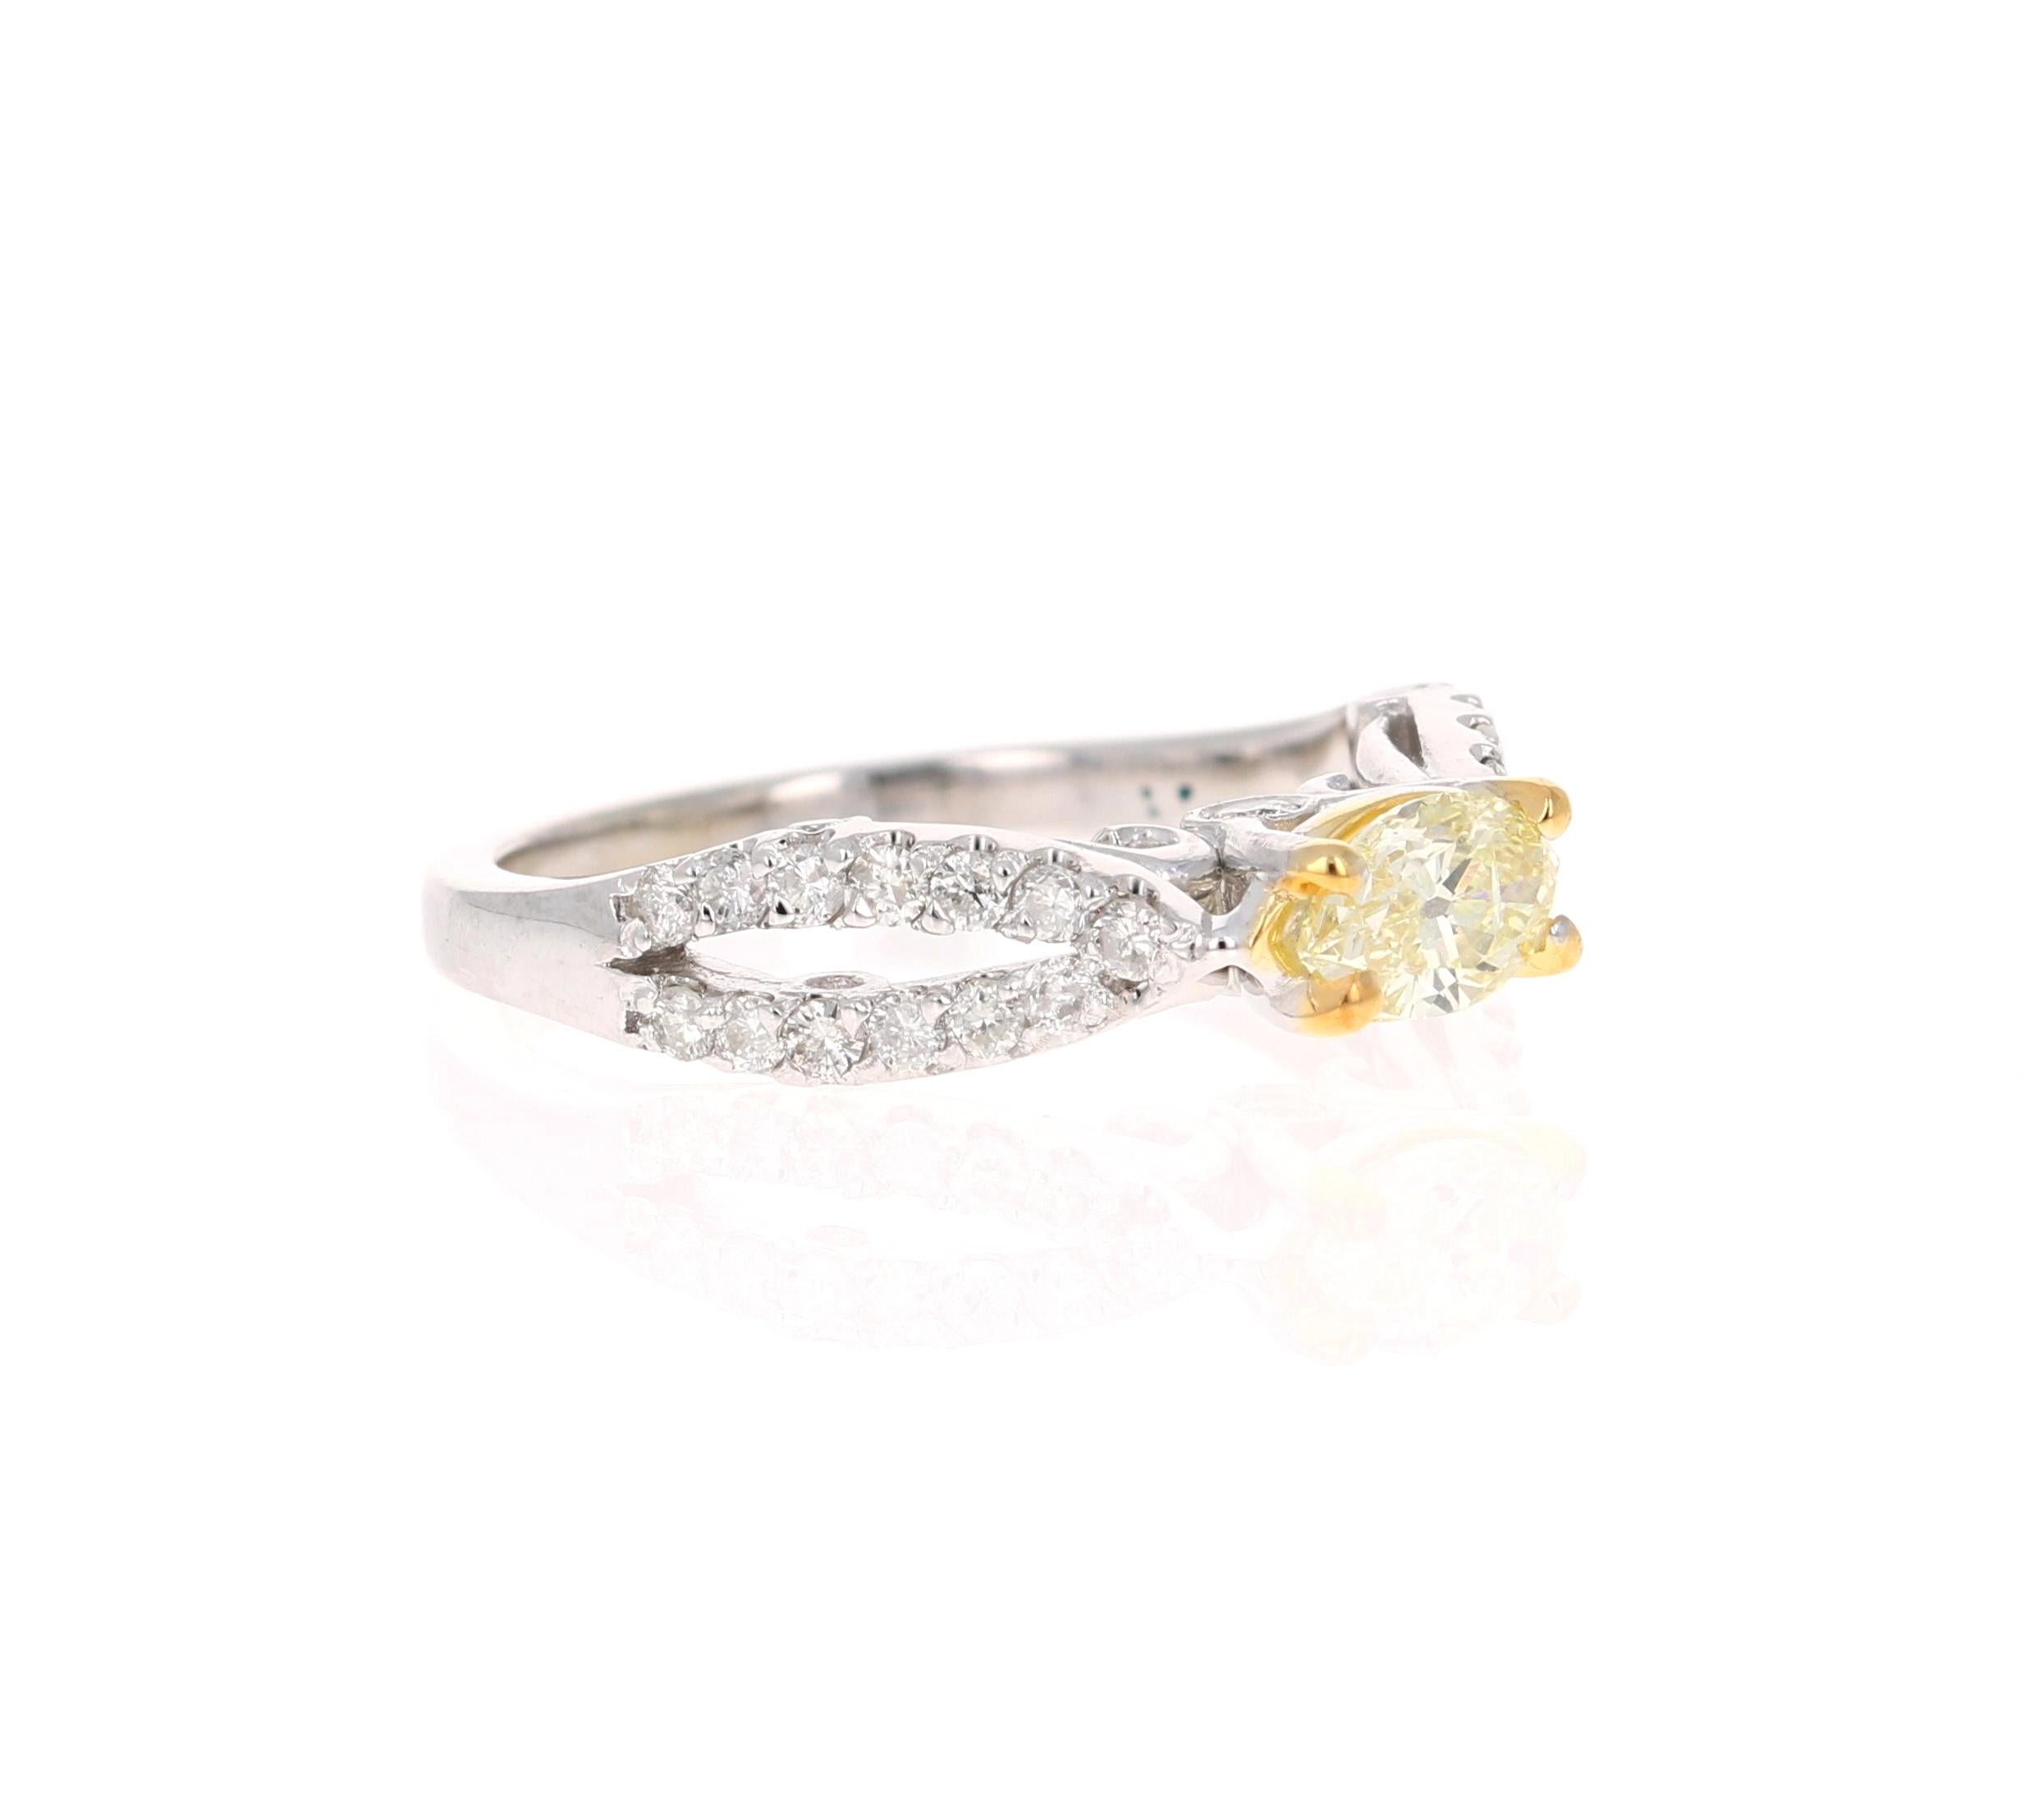 Diese Schönheit hat eine natürliche Marquise Cut Yellow Diamond, die 0,47 Karat wiegt. Er ist umgeben von 34 Diamanten im Rundschliff mit einem Gewicht von 0,40 Karat. Das Gesamtkaratgewicht des Rings beträgt 0,87 Karat. 

Der Ring ist aus 14 Karat